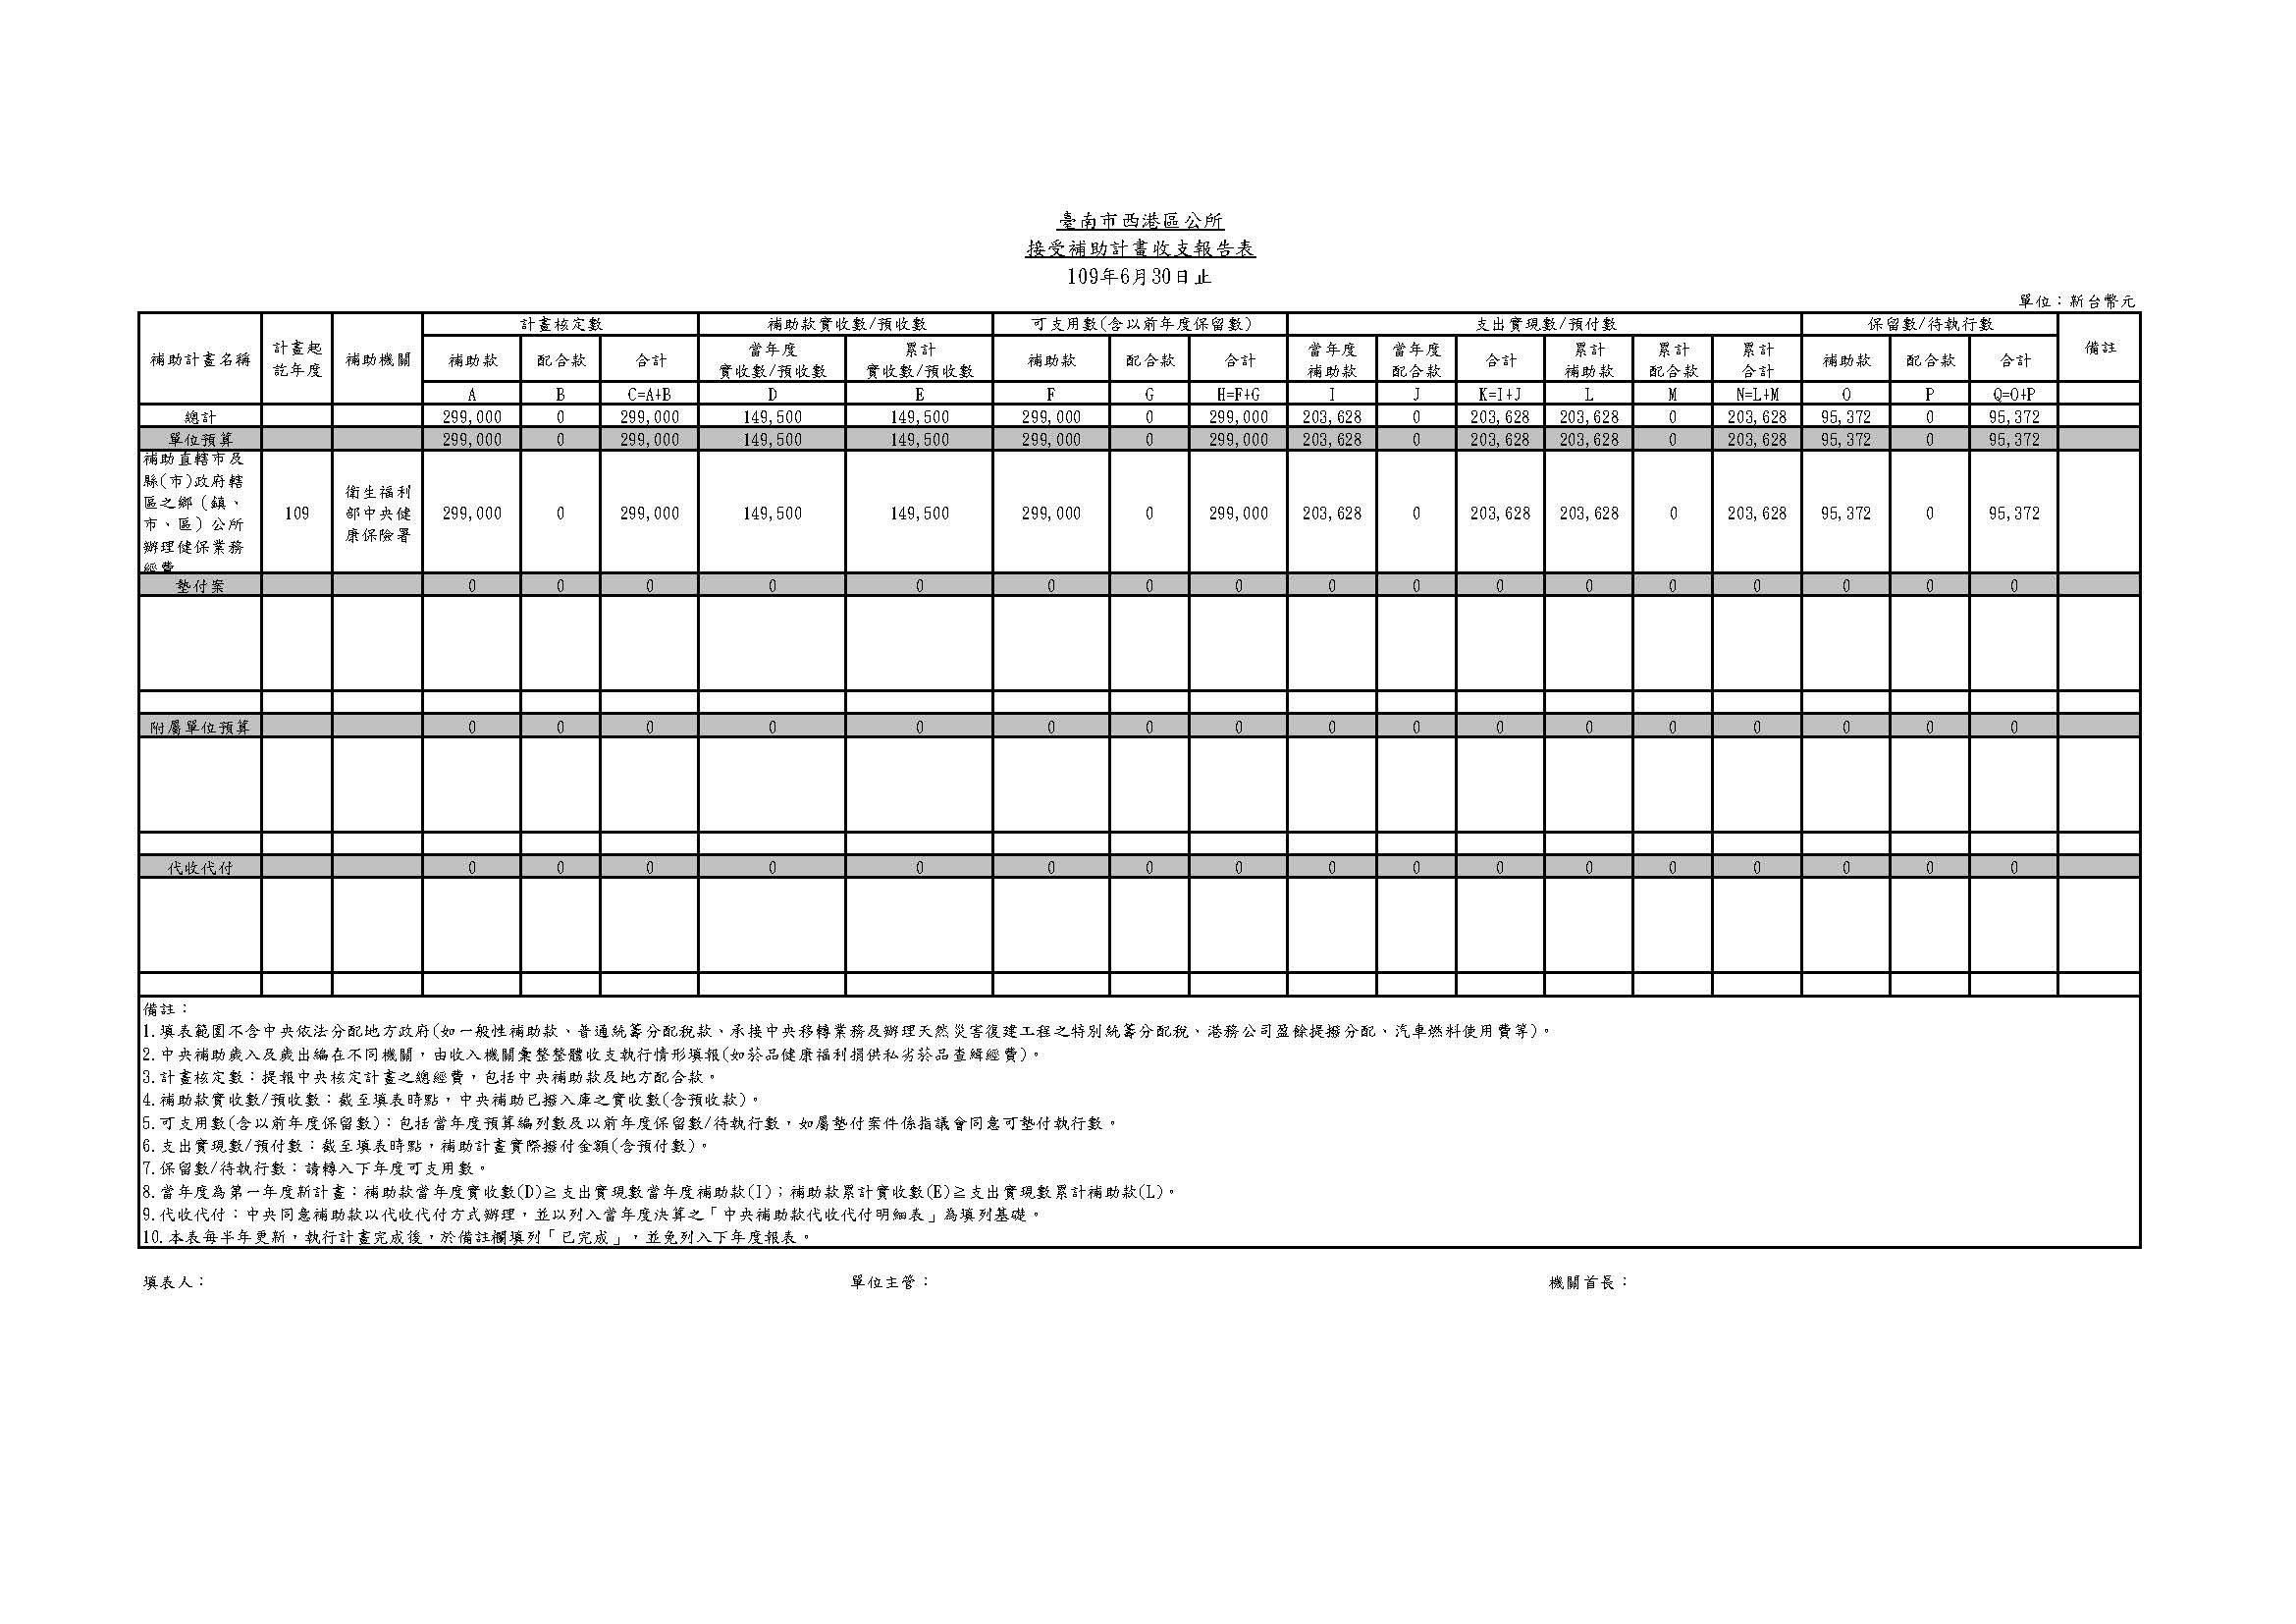 西港1090630接受補助計畫收支報告表